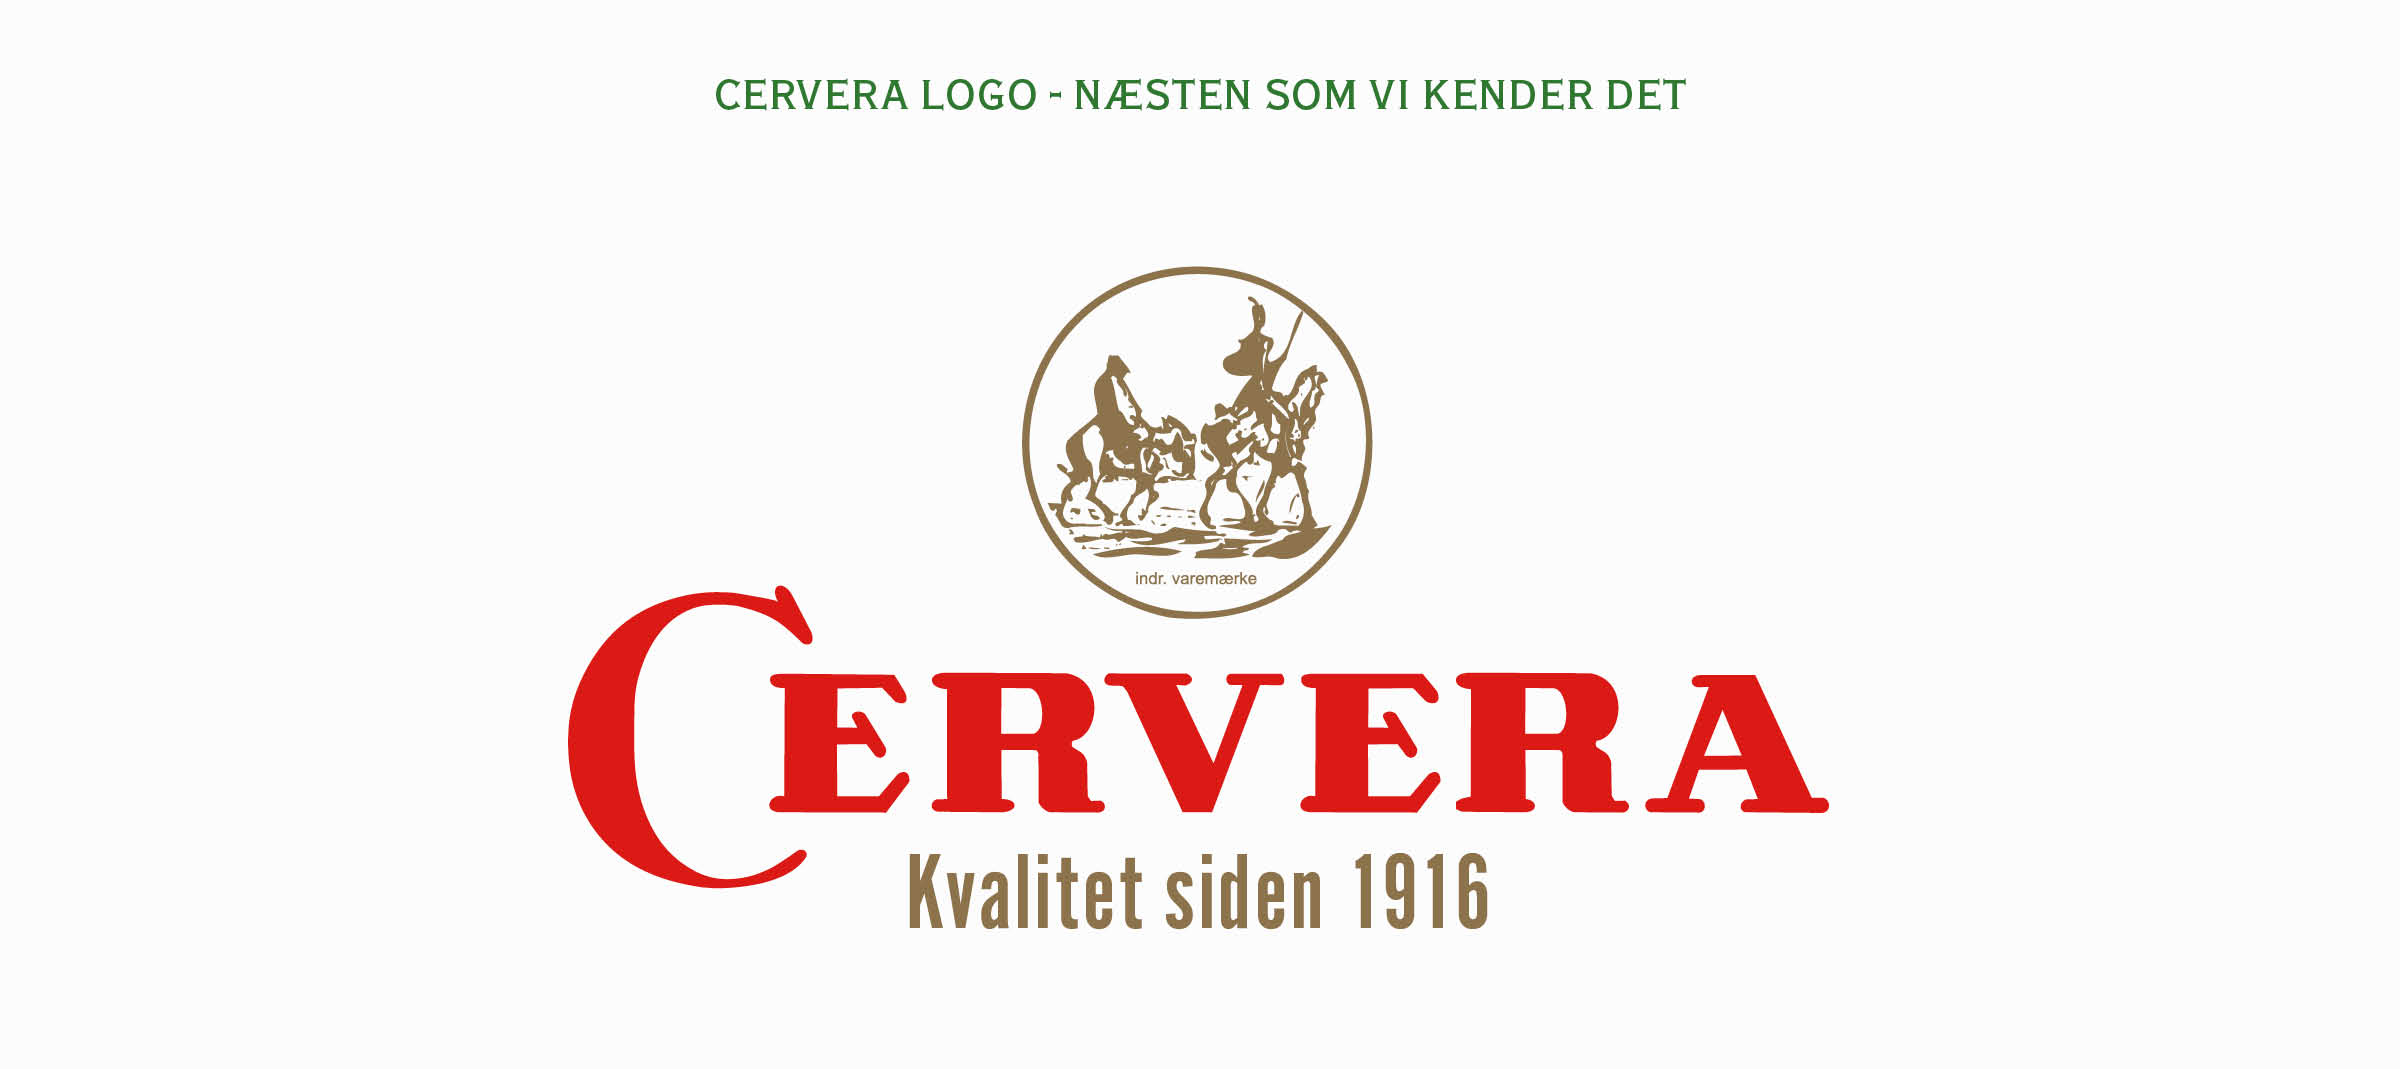 Logo til Cervera CVI i en case til Cameleon Creatives A/S hjemmeside_emballagedesign